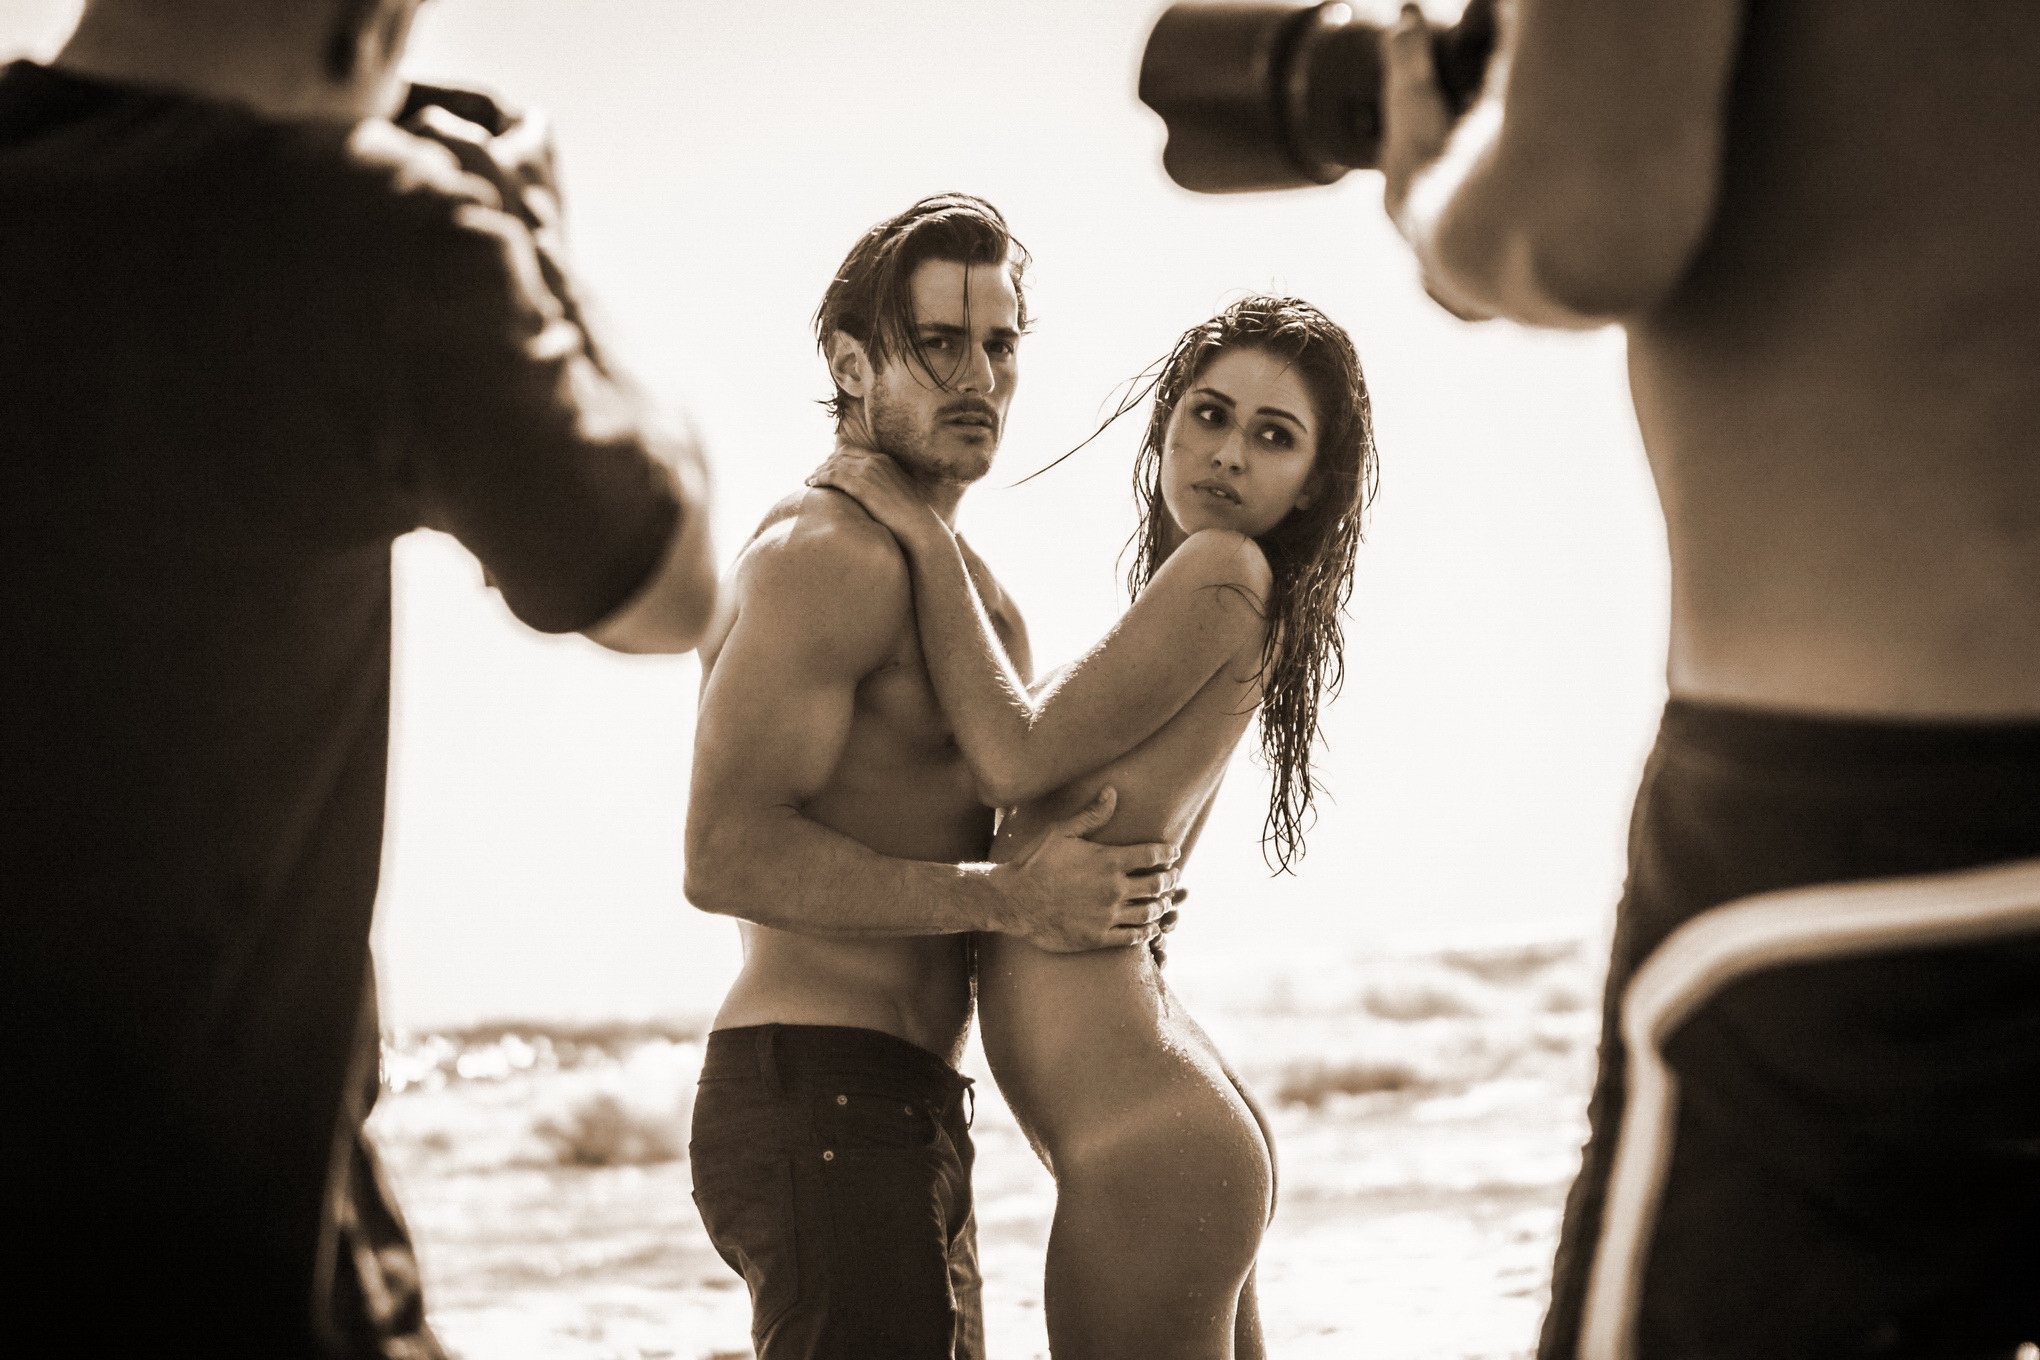 Jehane gigi paris totalmente desnuda acariciando en la playa photoshoot por steve shaw
 #75181116